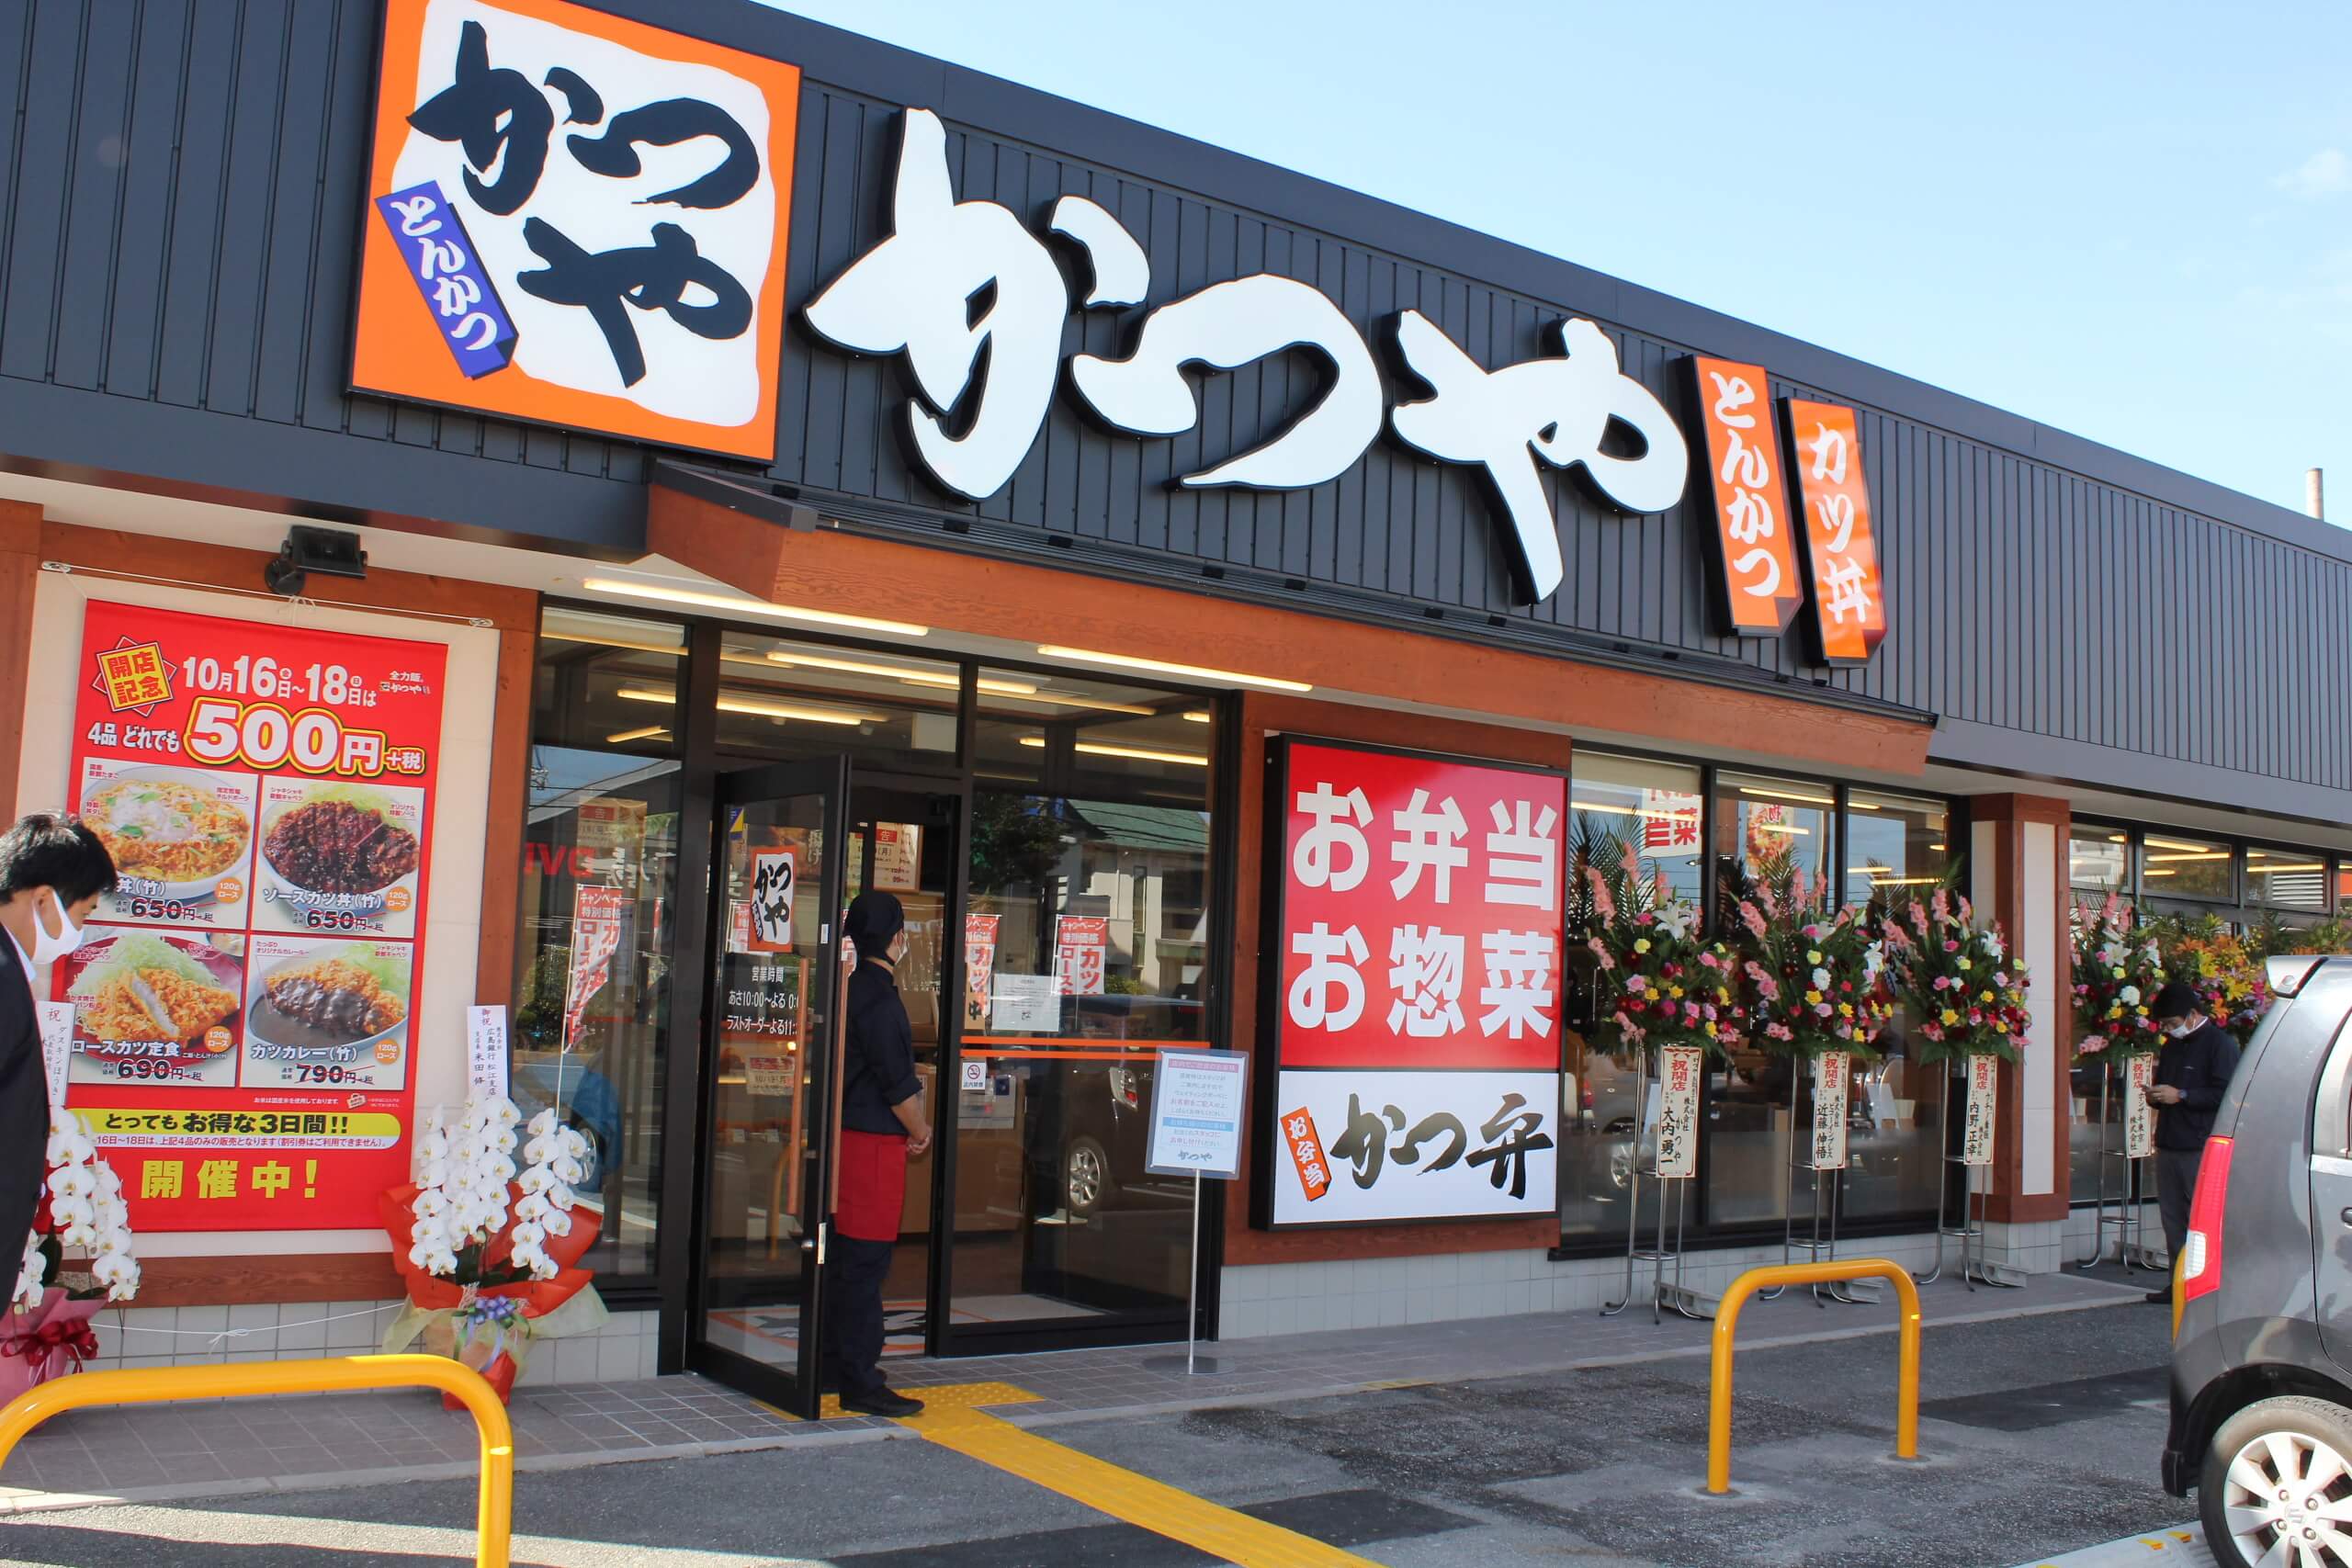 かつや米子が遂にオープン 株式会社ウッドベル 島根県 鳥取県で外食フランチャイズを展開